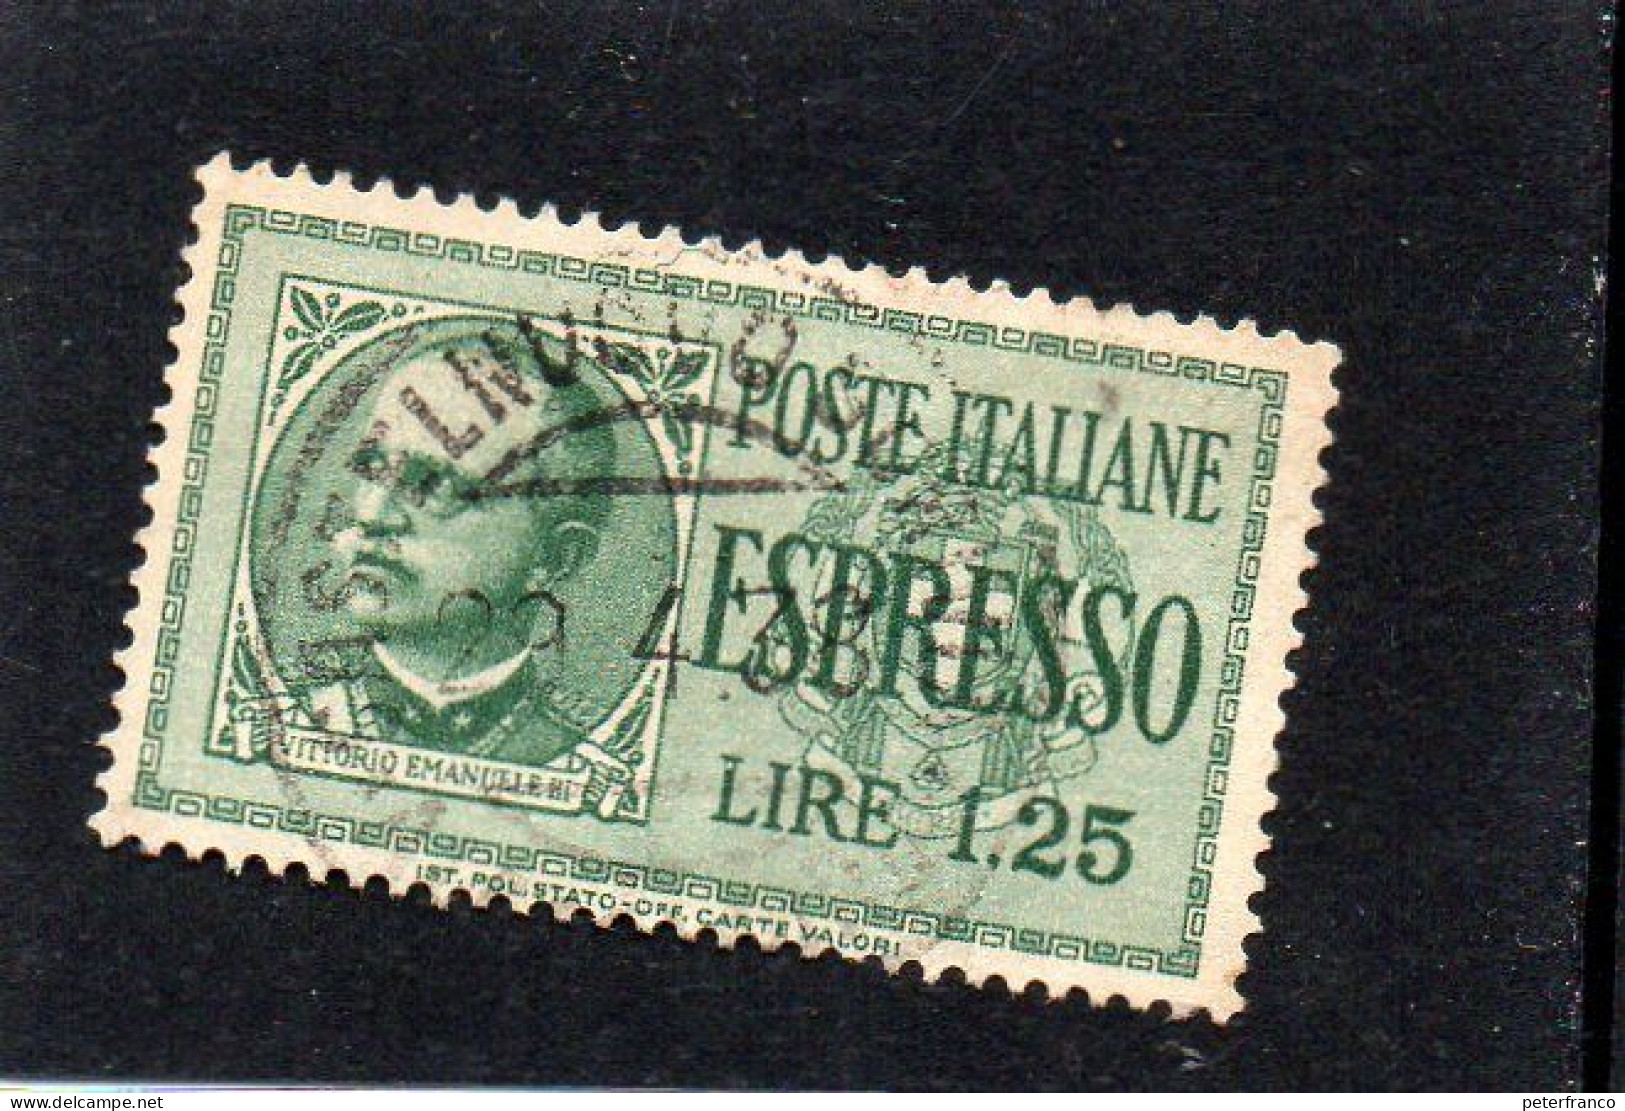 1932 Italia - Espresso - Posta Espresso